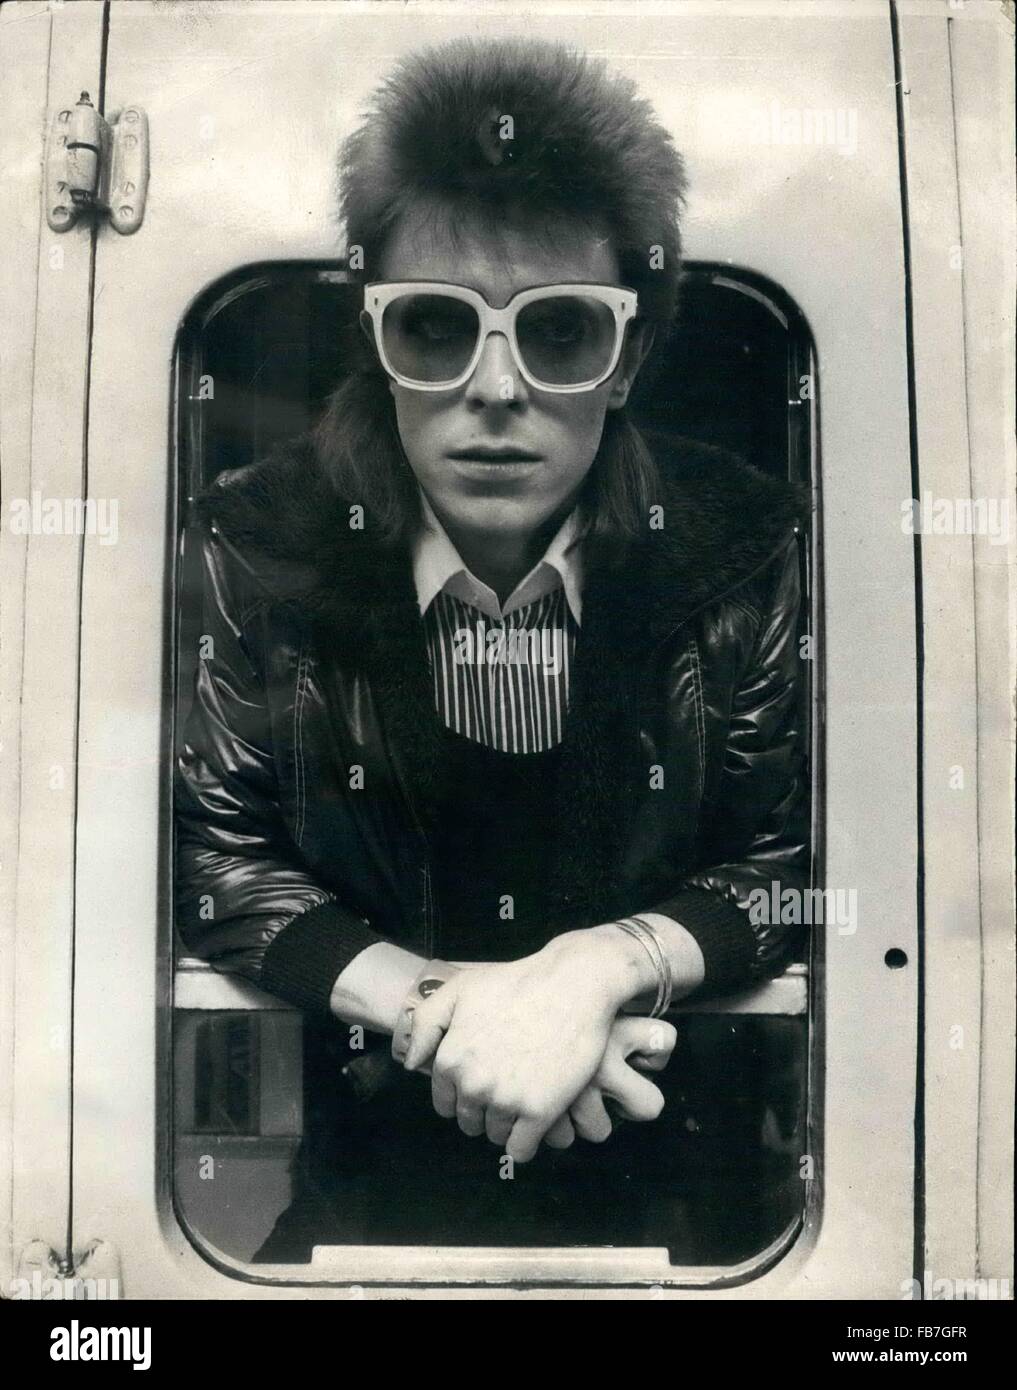 Jan 10, 2016 - File - David Bowie, infinitamente variabile, ferocemente forward-looking cantautore che ha insegnato a generazioni di musicisti circa la potenza del dramma, immagini e personae, morto domenica circondato dalla famiglia. Egli è stato 69. Bowie morì dopo diciotto mesi di battaglia con il cancro. Nella foto: lug. 07, 1973 - Londra, Inghilterra, Regno Unito - David Bowie a Victoria Station, lasciando per Parigi dove trascorrerà tre settimane la registrazione presso Chateau studios. (Credito Immagine: © Keystone Press Agency/Keystone USA via ZUMAPRESS.com) Foto Stock